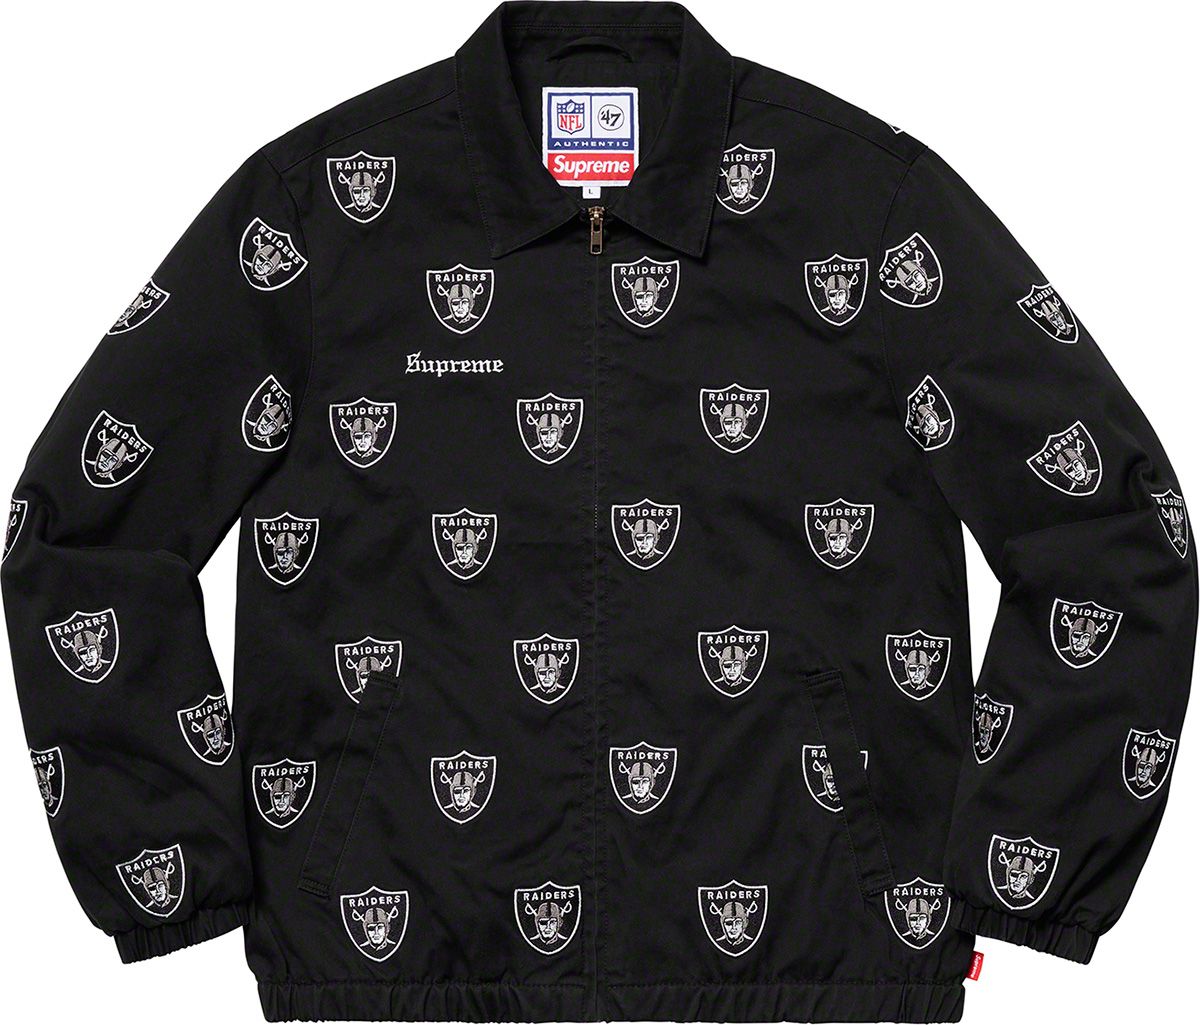 Supreme®/NFL/Raiders/'47 Embroidered Harrington Jacket - Spring